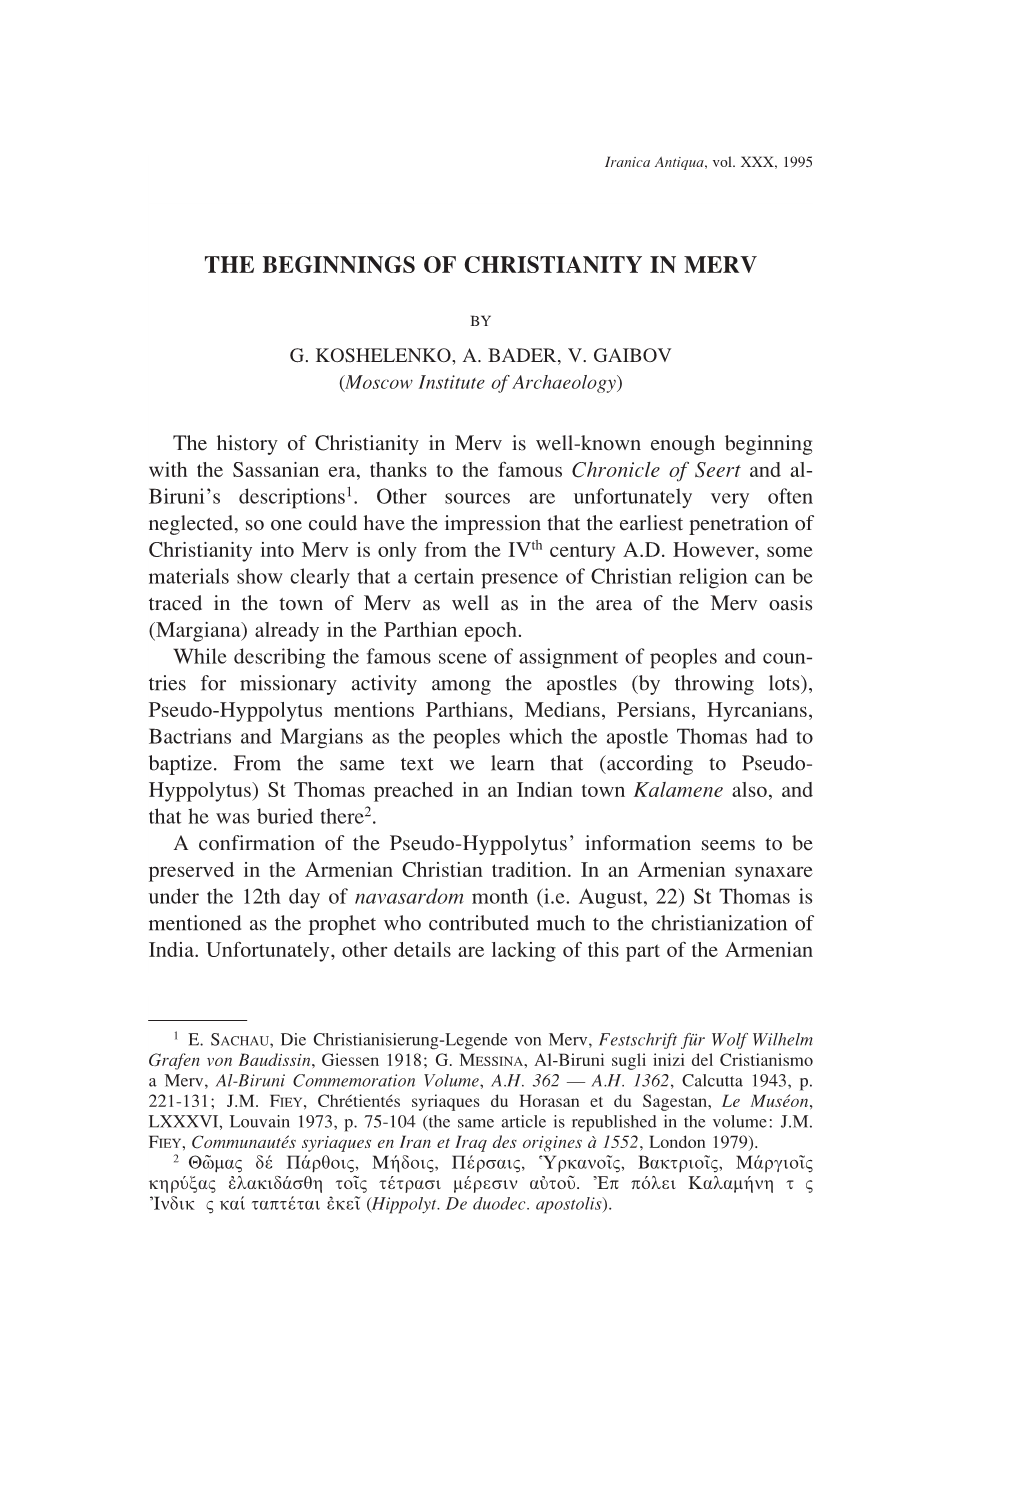 The Beginnings of Christianity in Merv